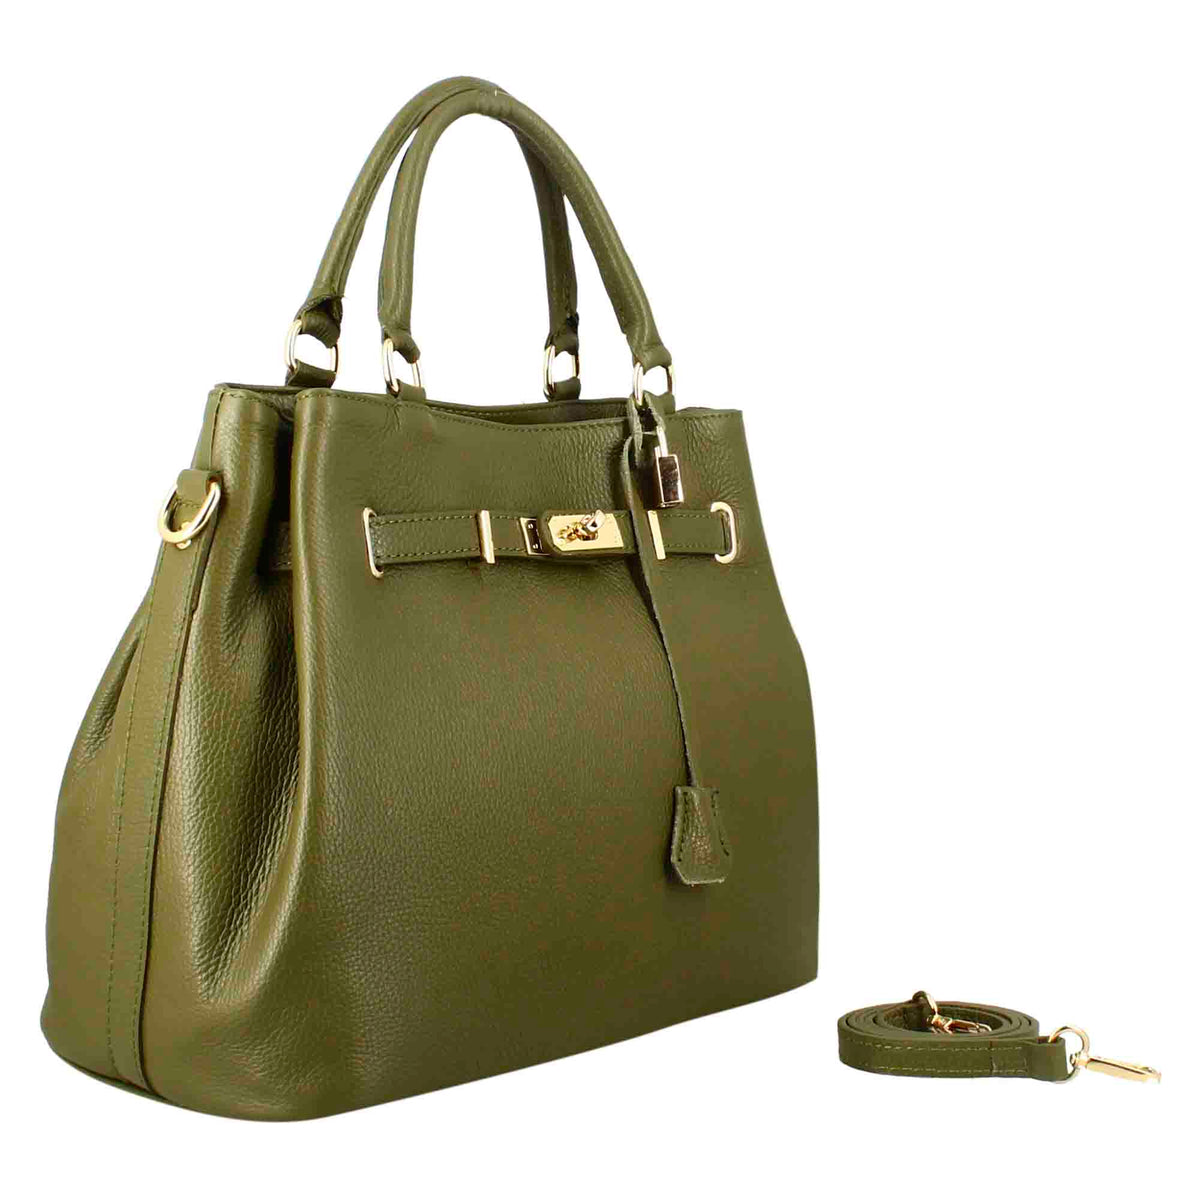 Frida leather handbag with removable green shoulder strap